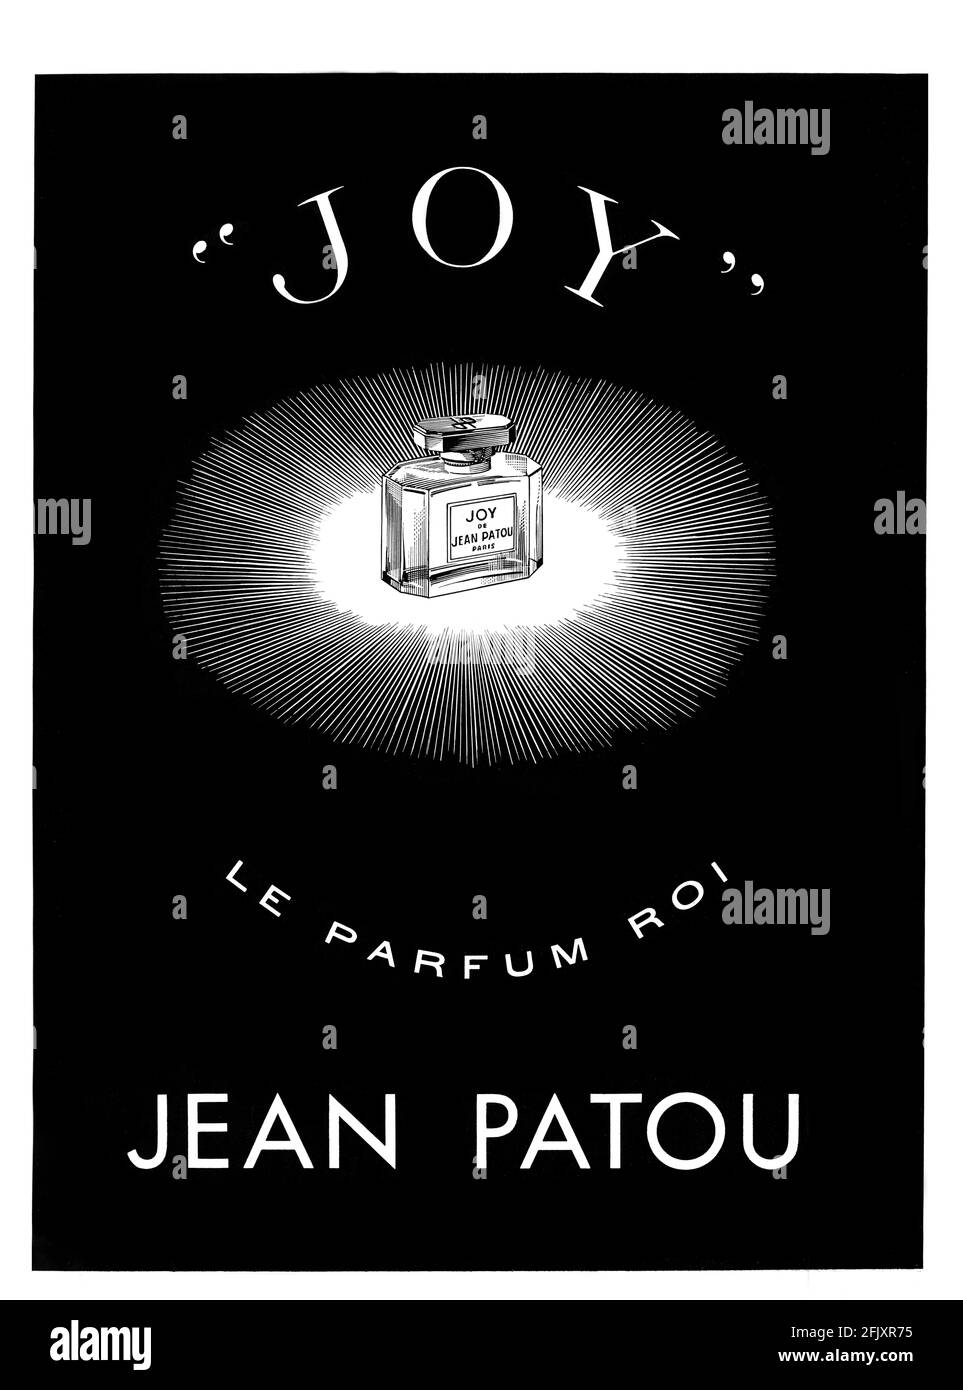 Jean patou joy Banque de photographies et d’images à haute résolution ...